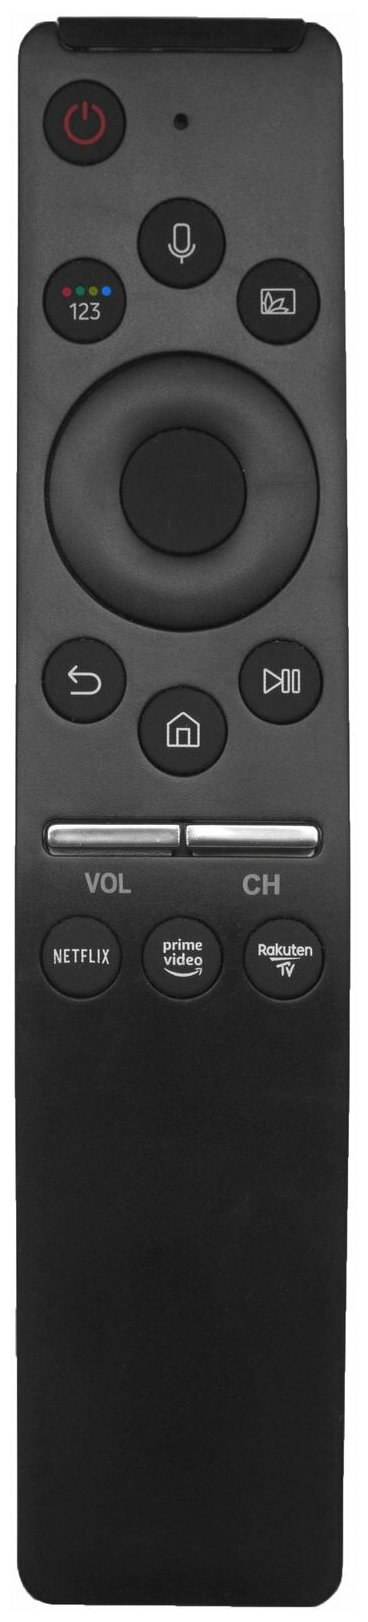 Пульт для Samsung BN59-01312B (BN59-01274A) голосовое управление